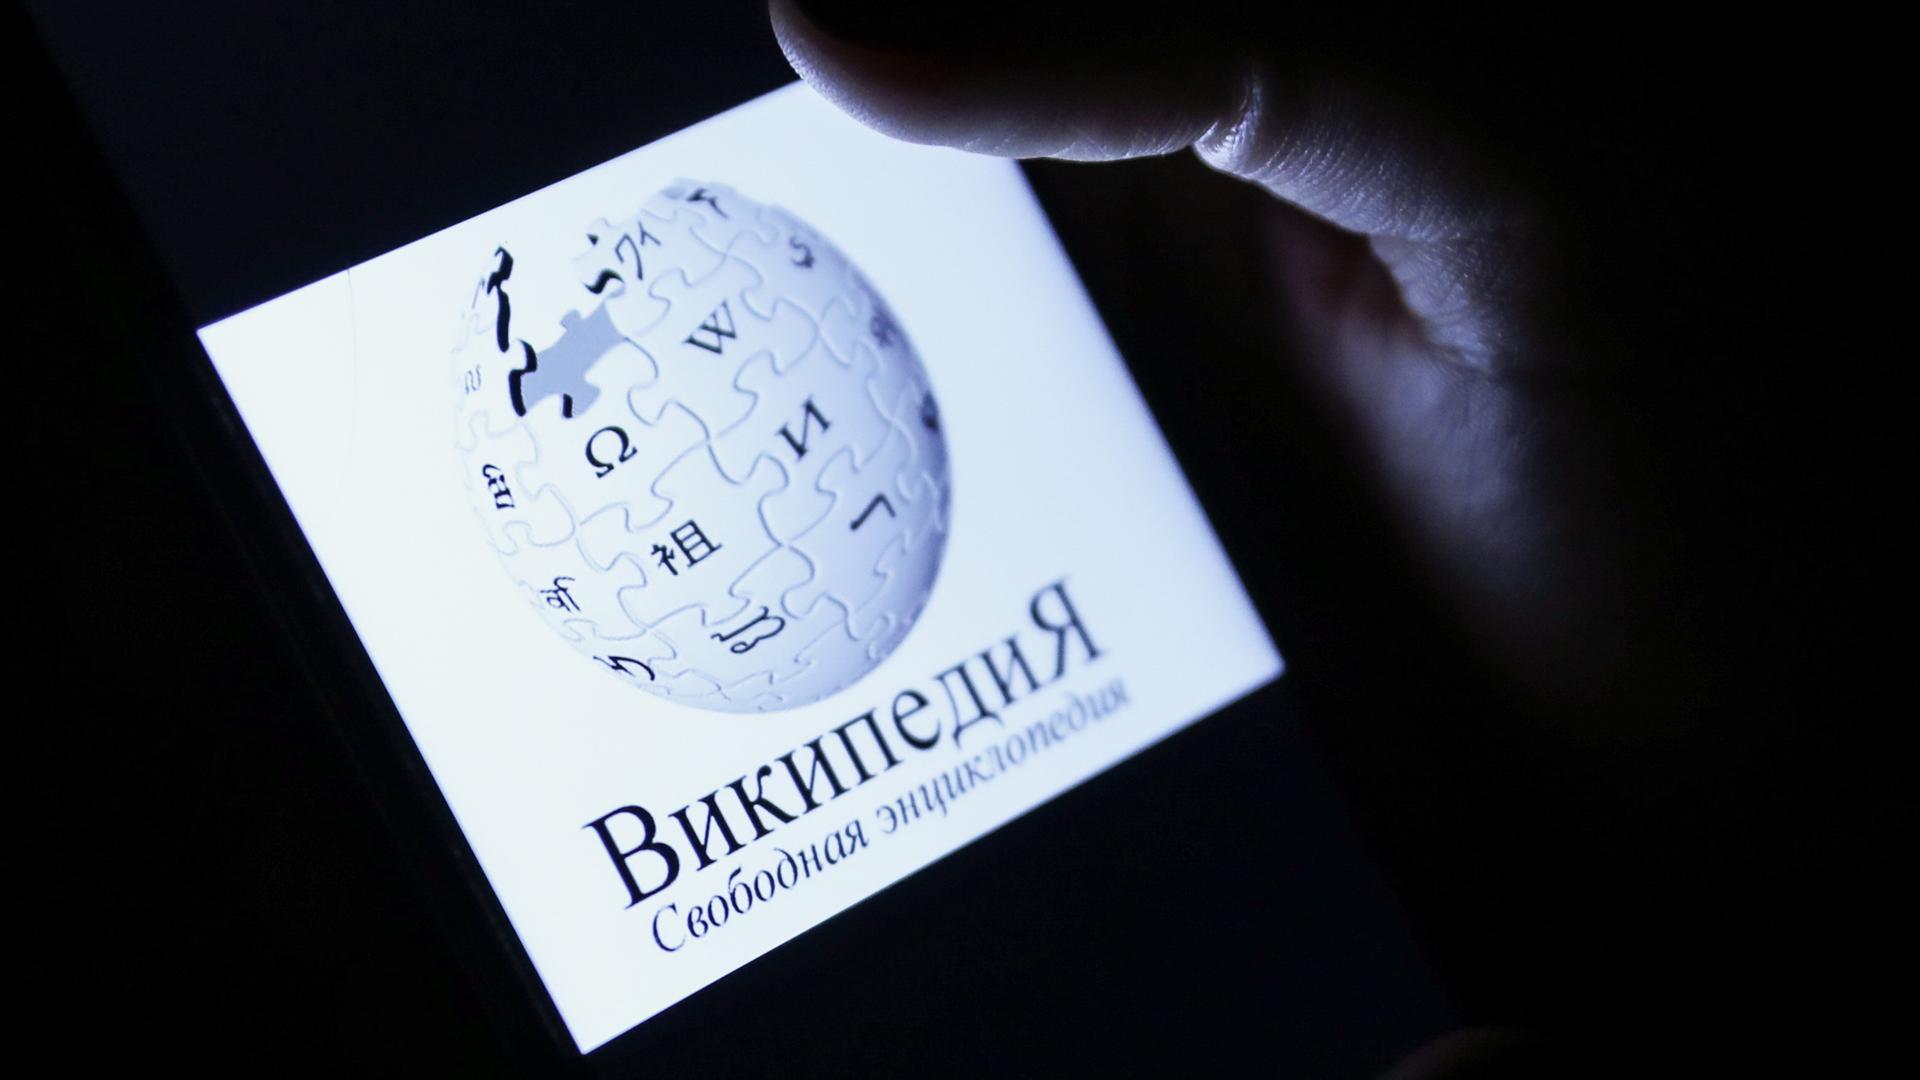 Auf einem Smartphone-Display ist das Logo der Online-Enzyklopädie Wikipedia, darunter der Name der Seite in kyrillischen Buchstaben und in russischer Sprache.